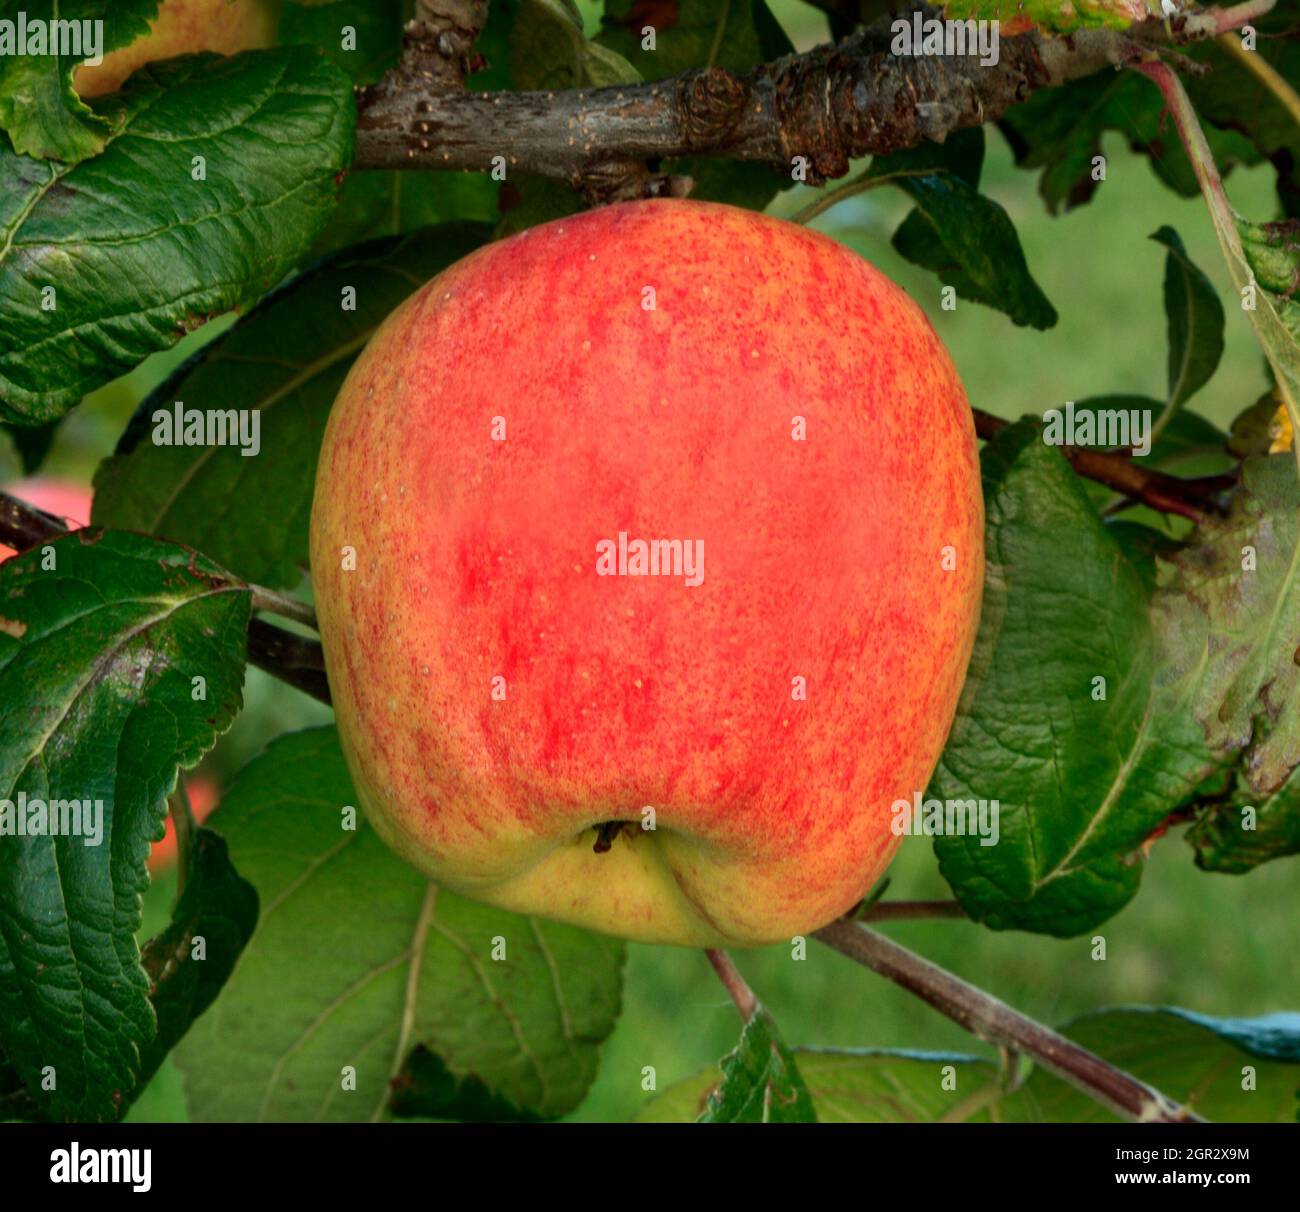 Pomme 'Horsford prolifique', pommes, fruits, malus domestica, saine alimentation, croissance sur arbre Banque D'Images